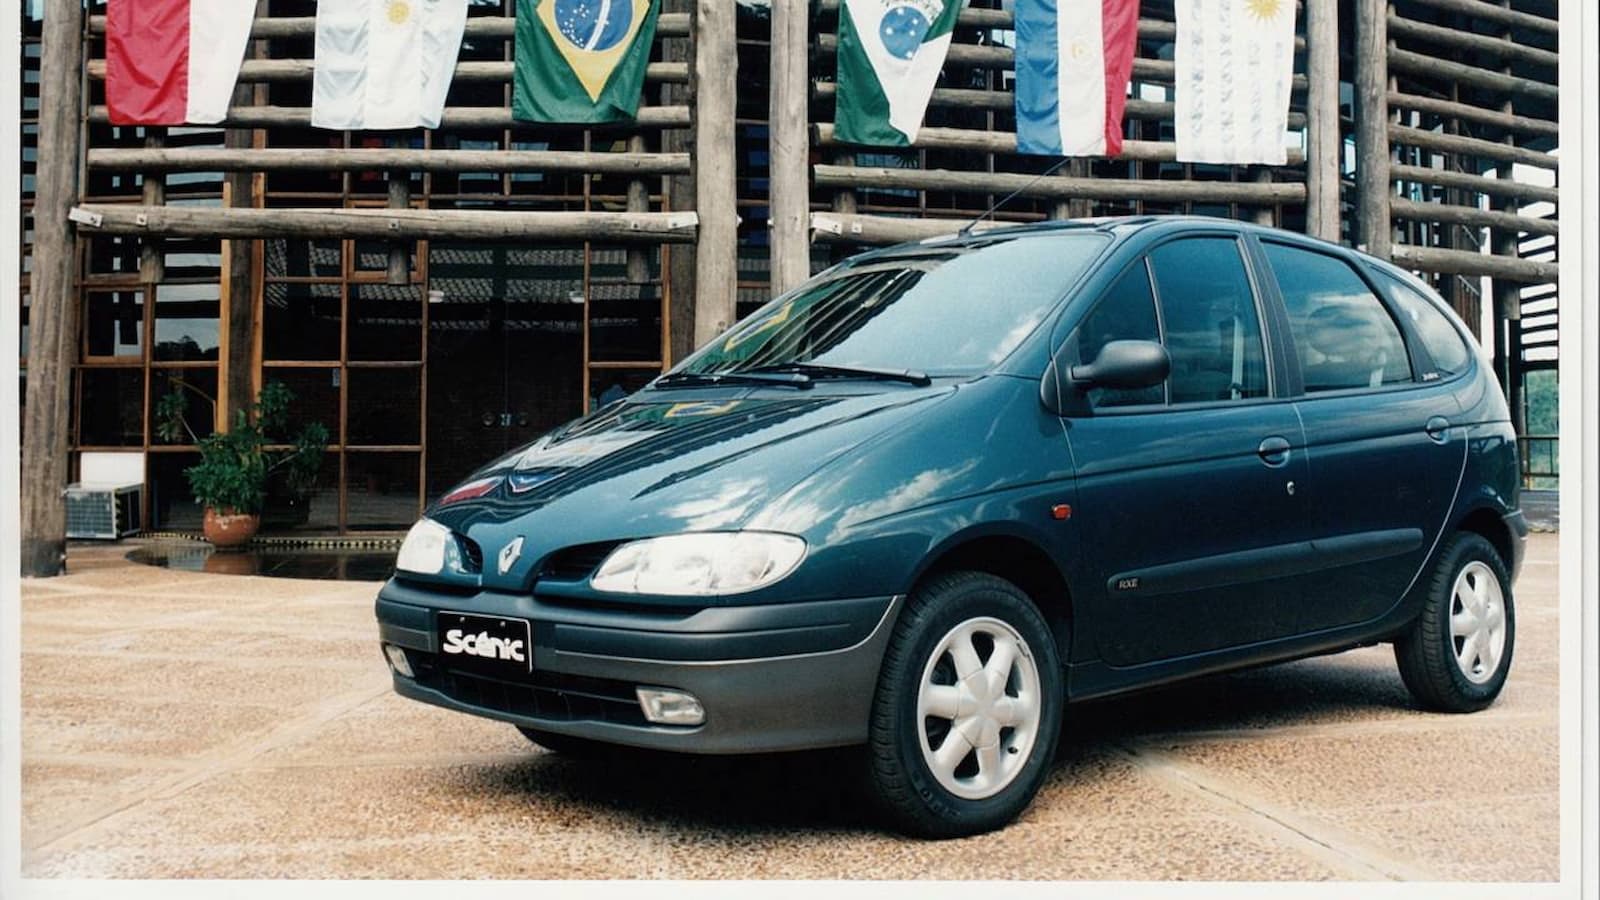 Renault Scènic